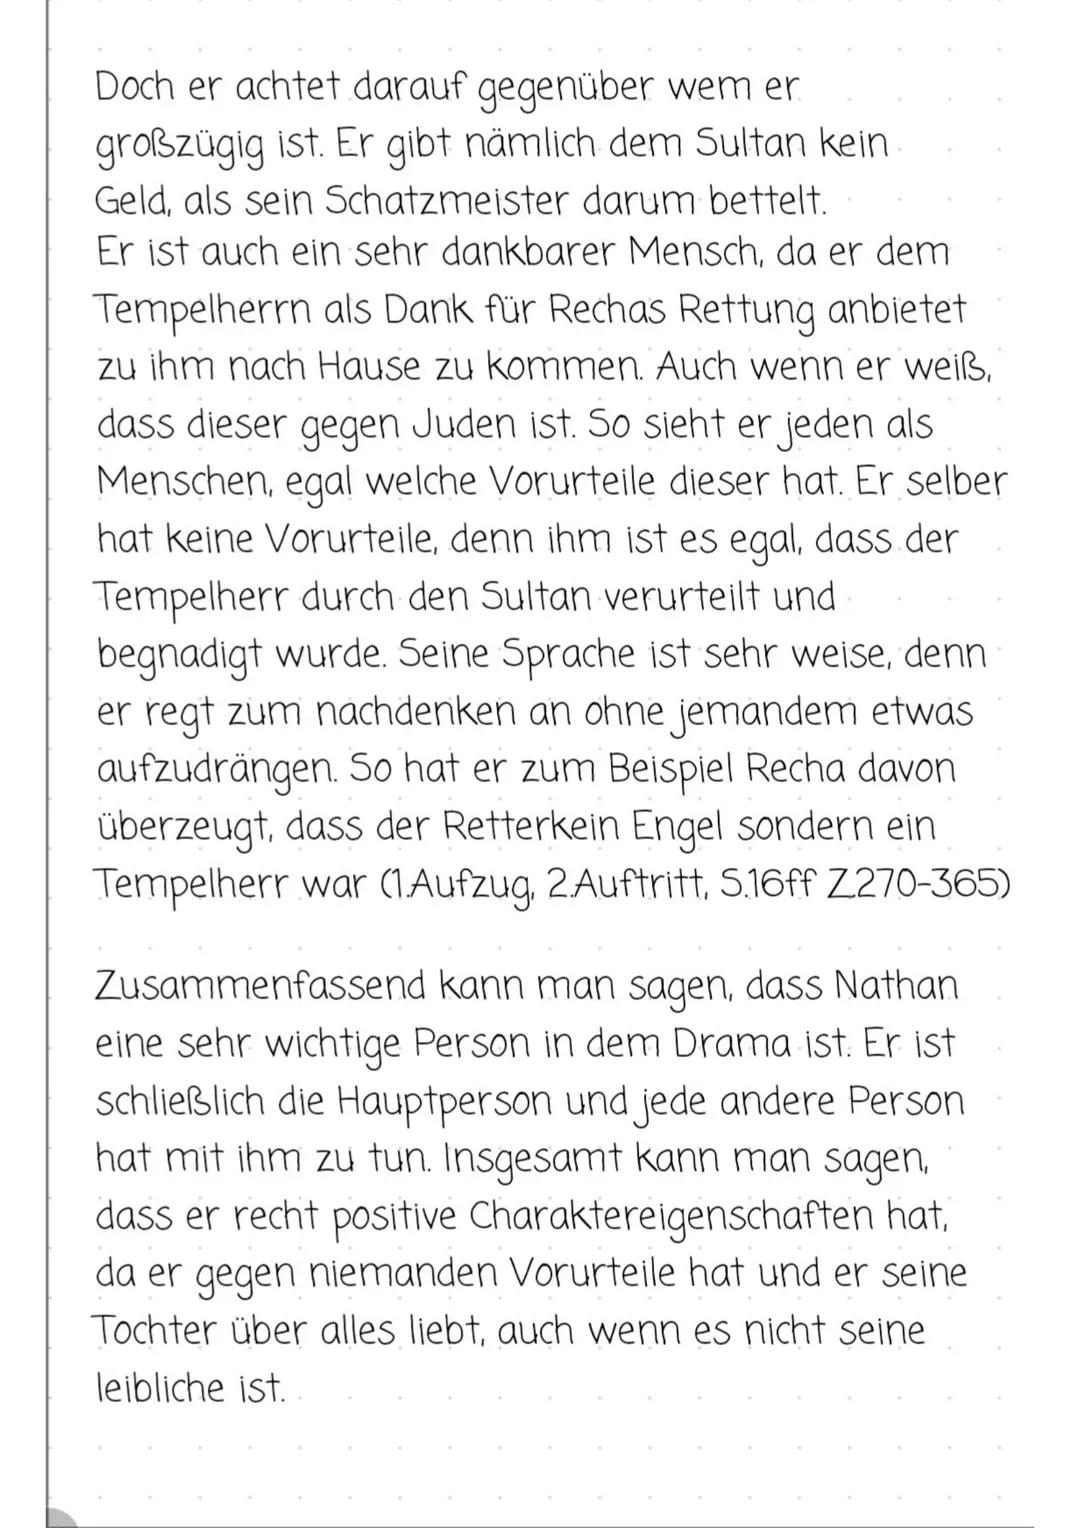 TempelheRR
Charakterisering
Cher
Der Tempelherr ist mit eine der männlichen Hauptfiguren in dem
Drama "Nathan der Weise", welches 1779 von G